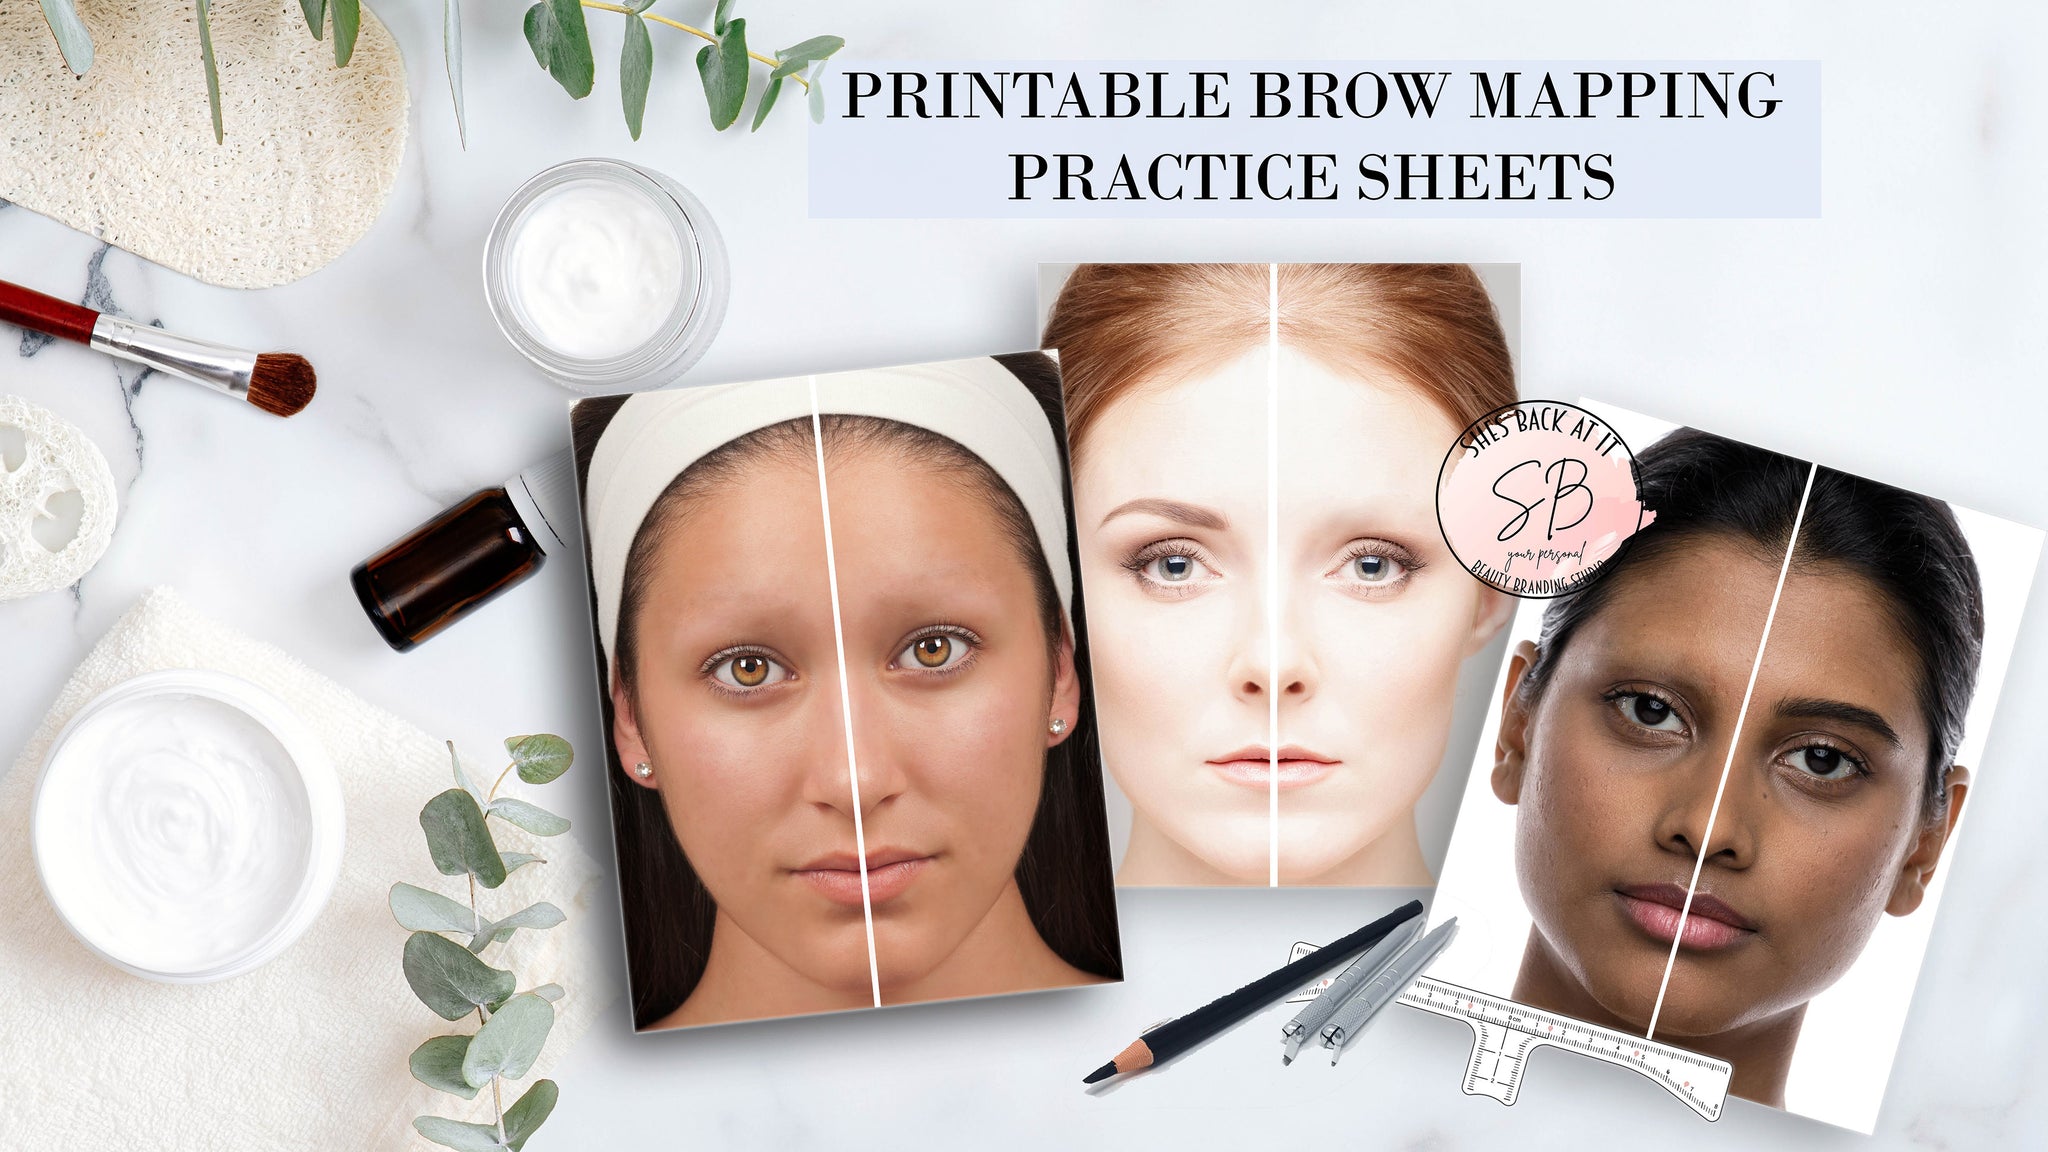 Eyebrow Practice Sheets